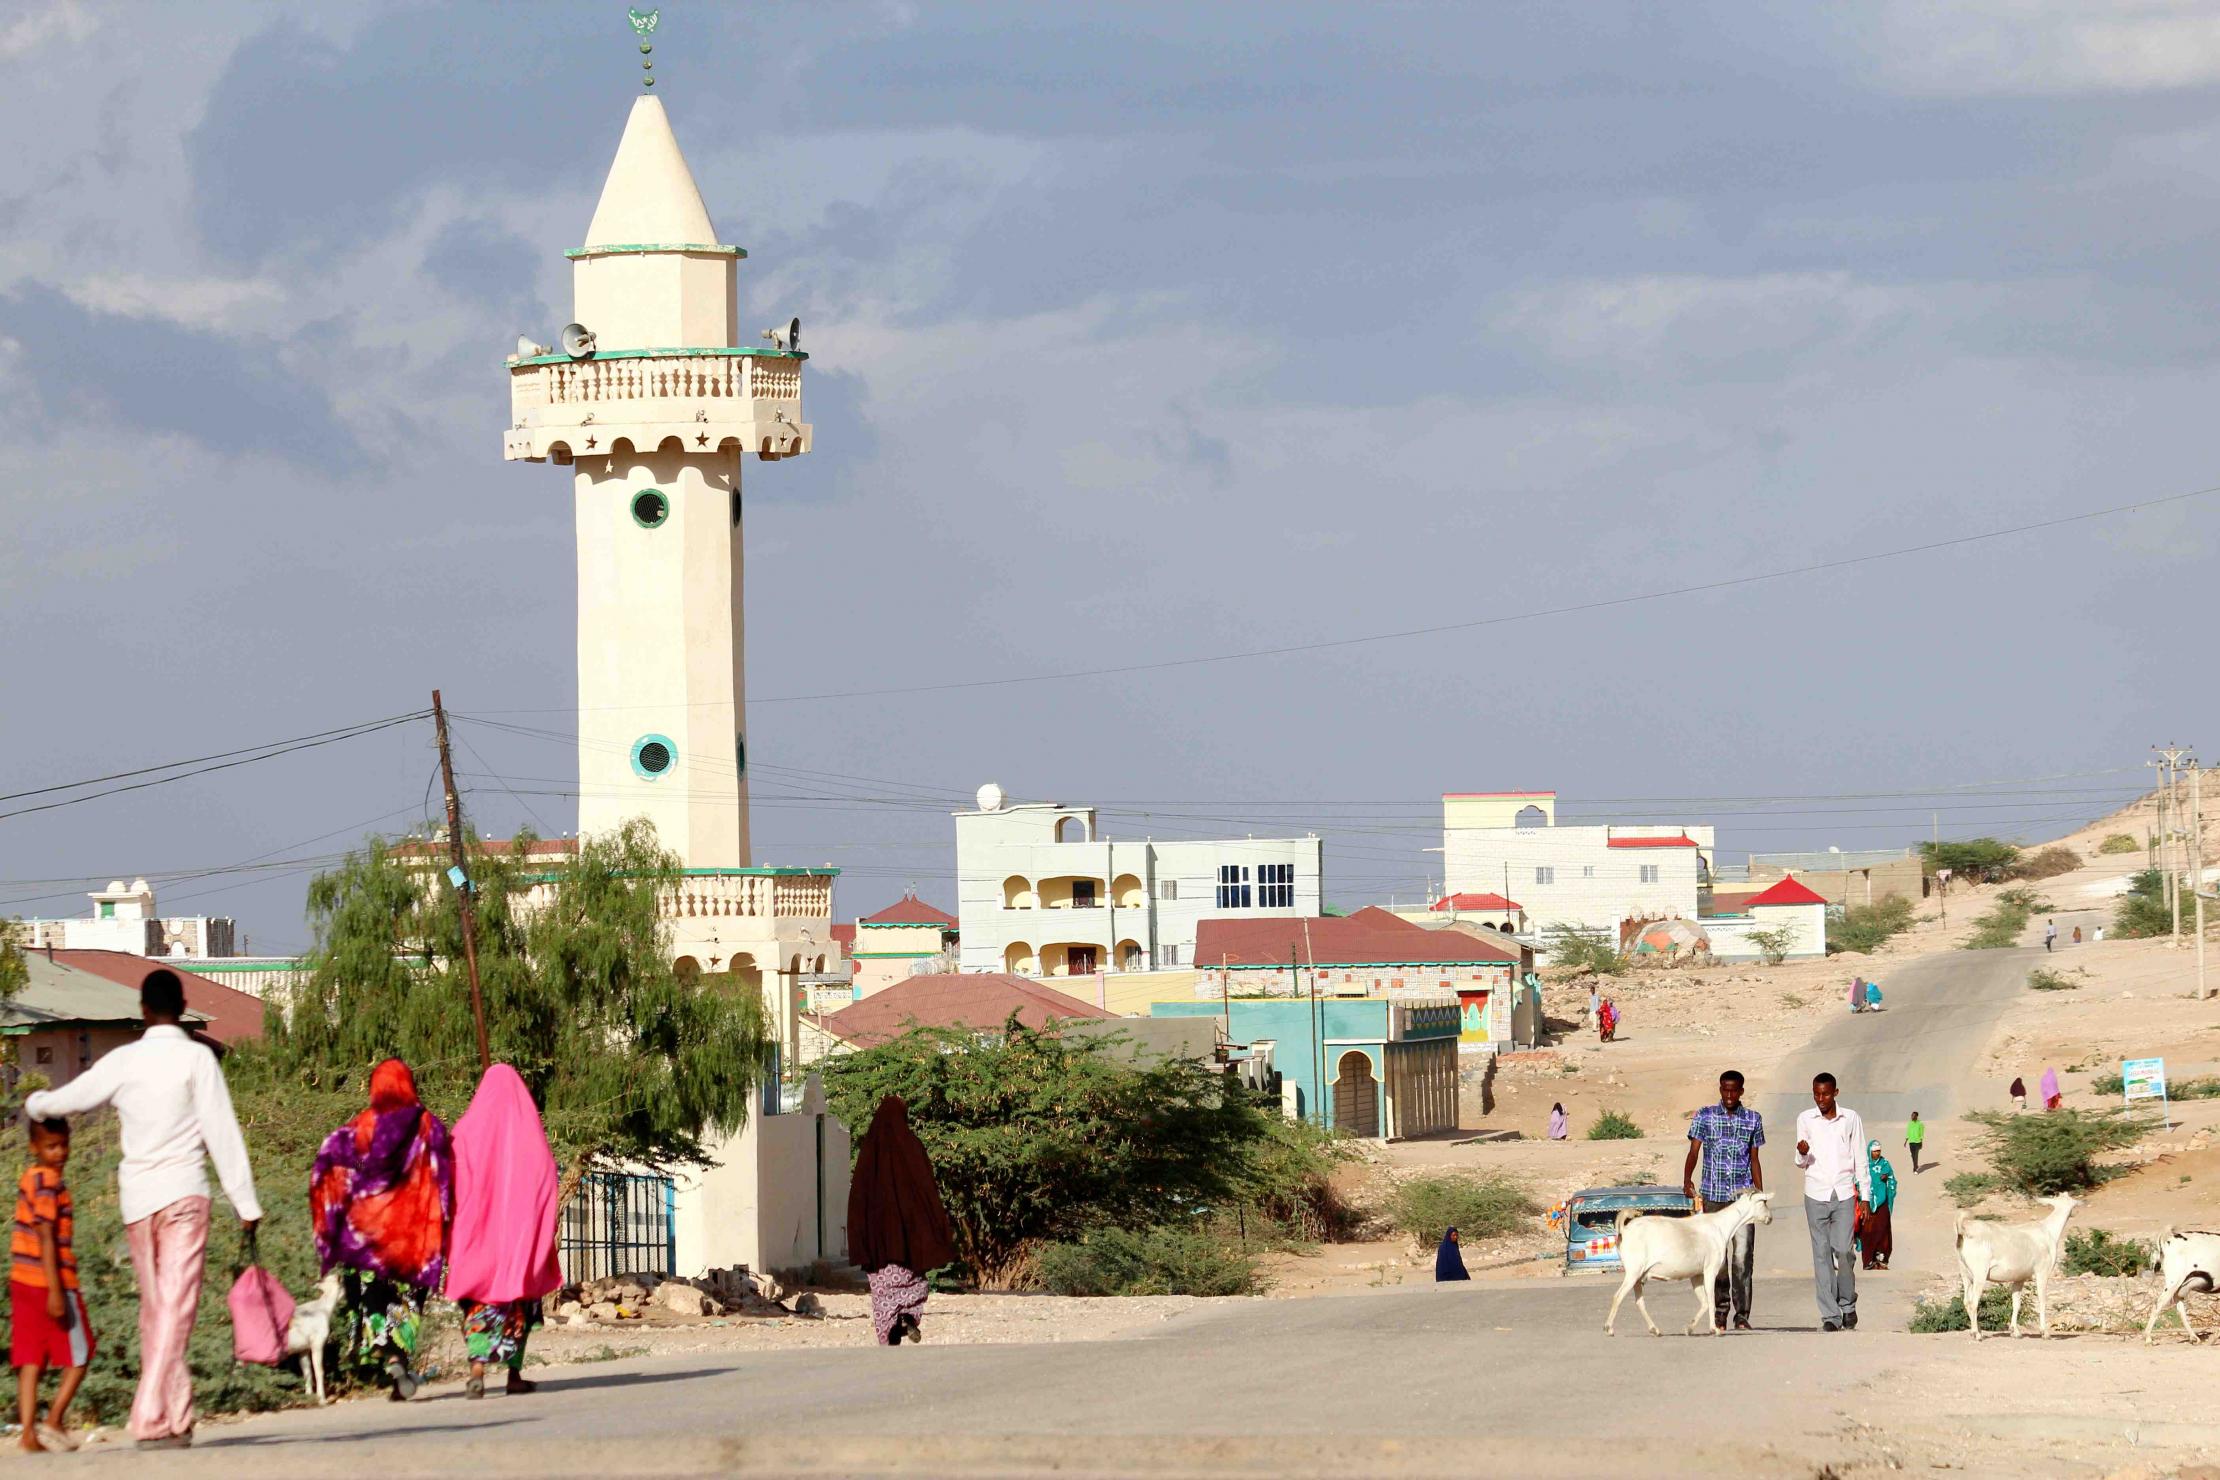 Street view in Somalia